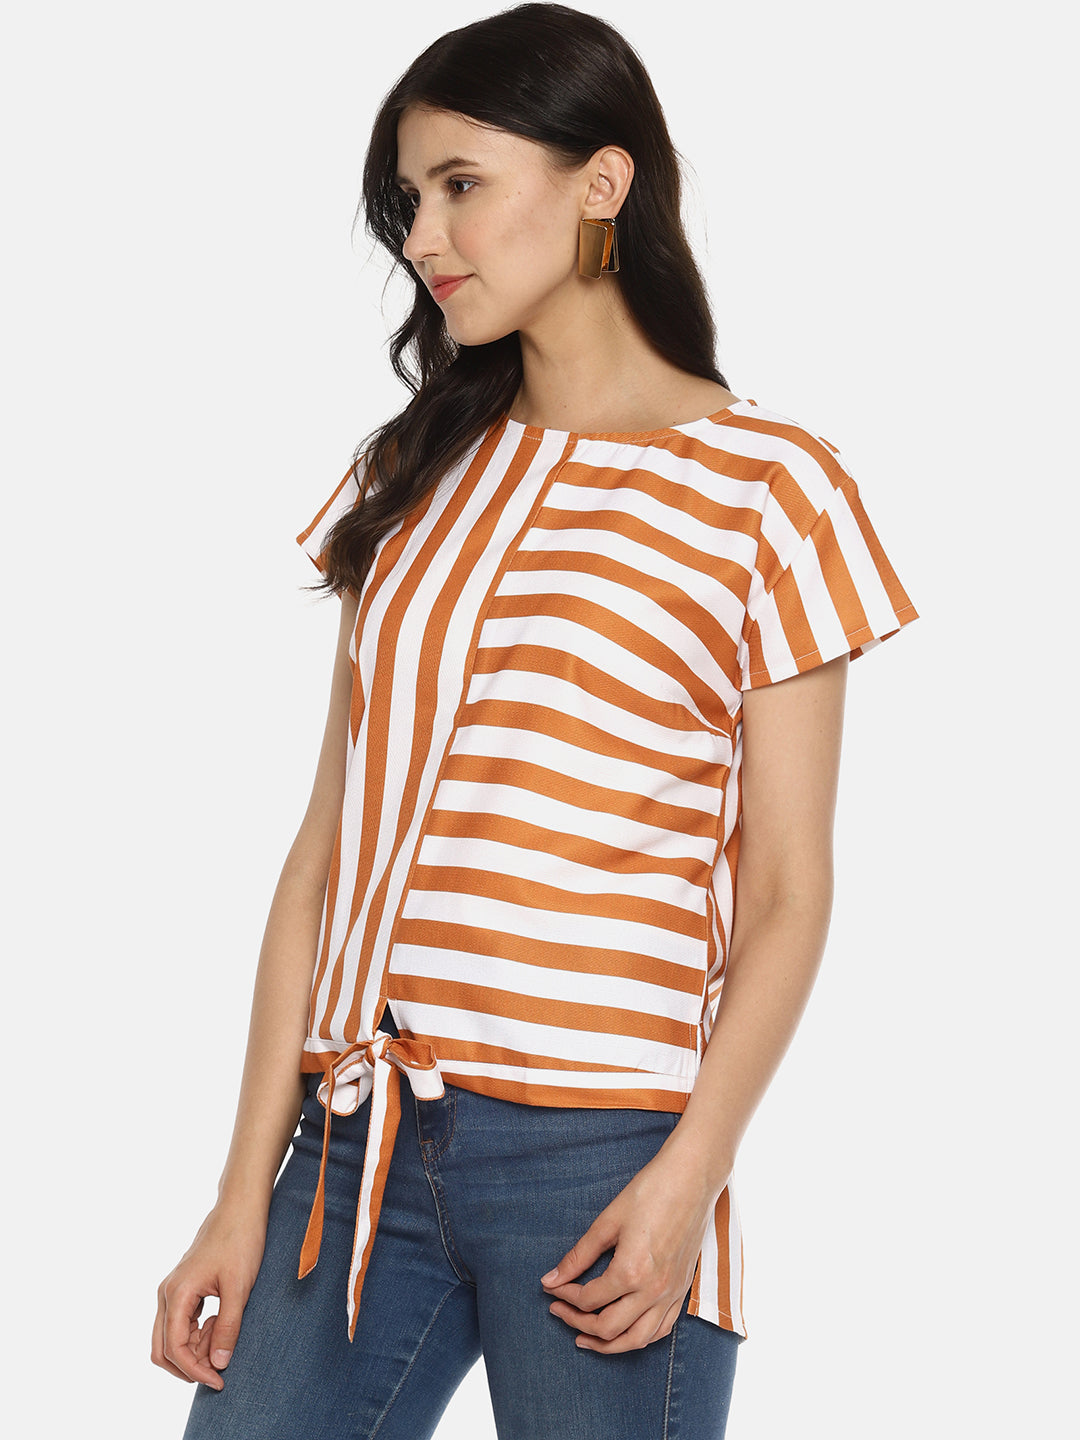 SAHORA Women orange striped Printed Top